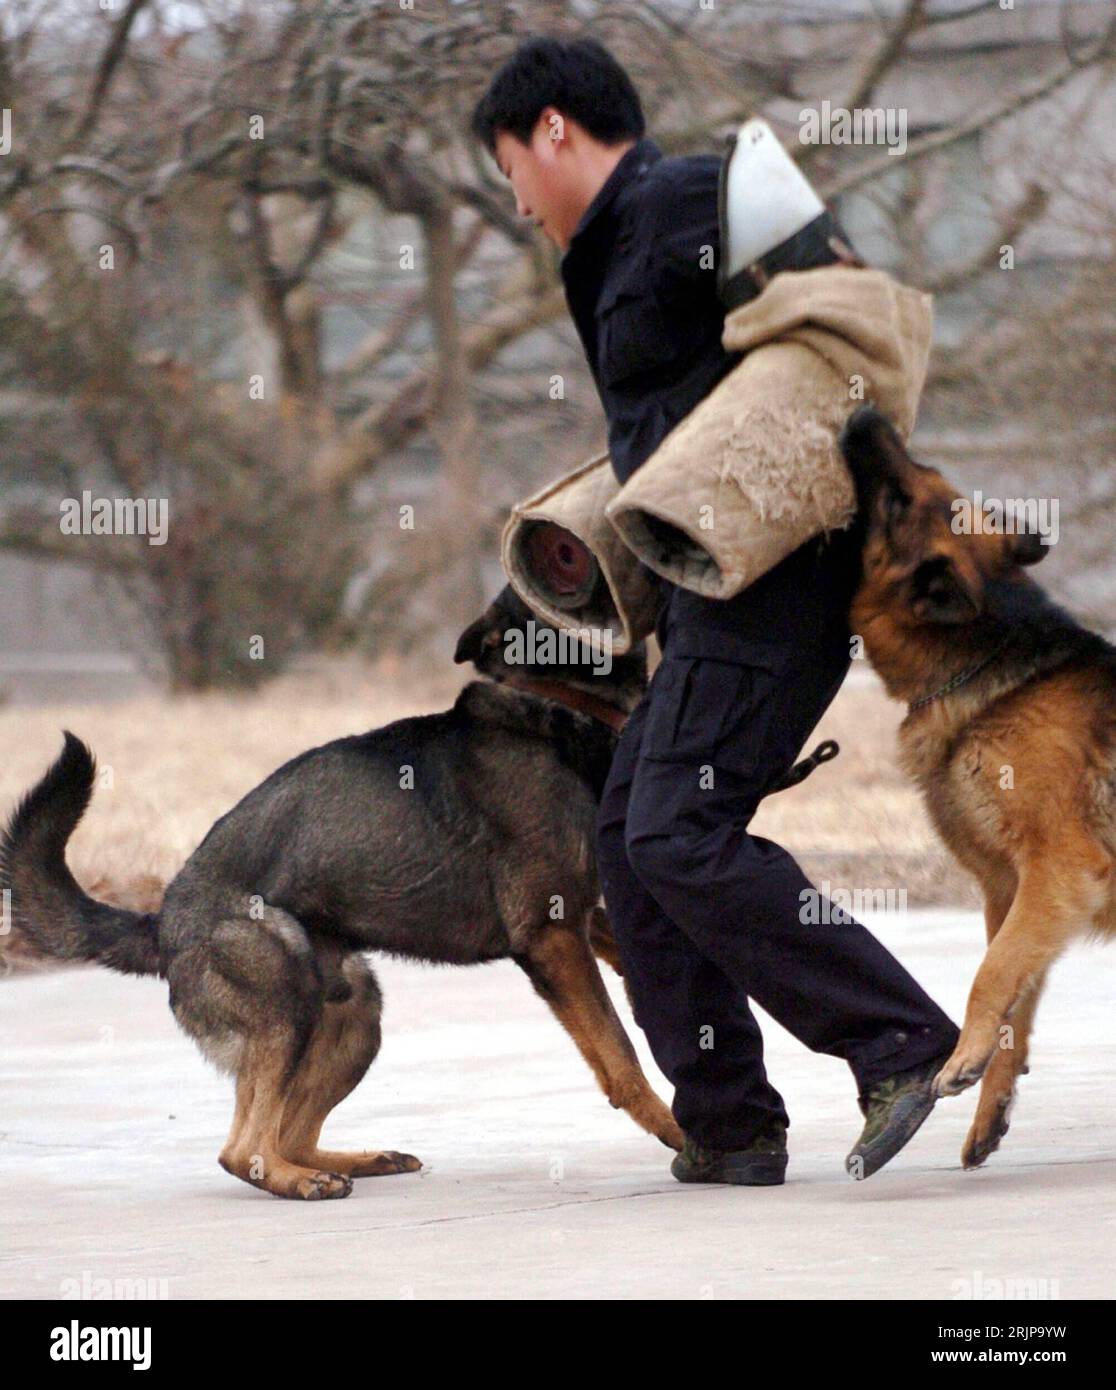 Bildnummer: 51135625  Datum: 26.02.2006  Copyright: imago/Xinhua Hunde mit ihrem Ausbilder beim Training in Jinan - China PUBLICATIONxNOTxINxCHN, Personen , Tiere; 2006, Hunde, Säugetier, Säugetiere, Polizeihund, Polizeihunde, Hundetraining, Hundeerziehung, beißen, beißt, beißend, Hundeausbildung, Ausbildung, Training, fangen, Hundeausbilder, Trainer, Hundetrainer, Mann, Männer, Schäferhund, Schäferhunde; , hoch, Kbdig, Gruppenbild, China,  , Stock Photo